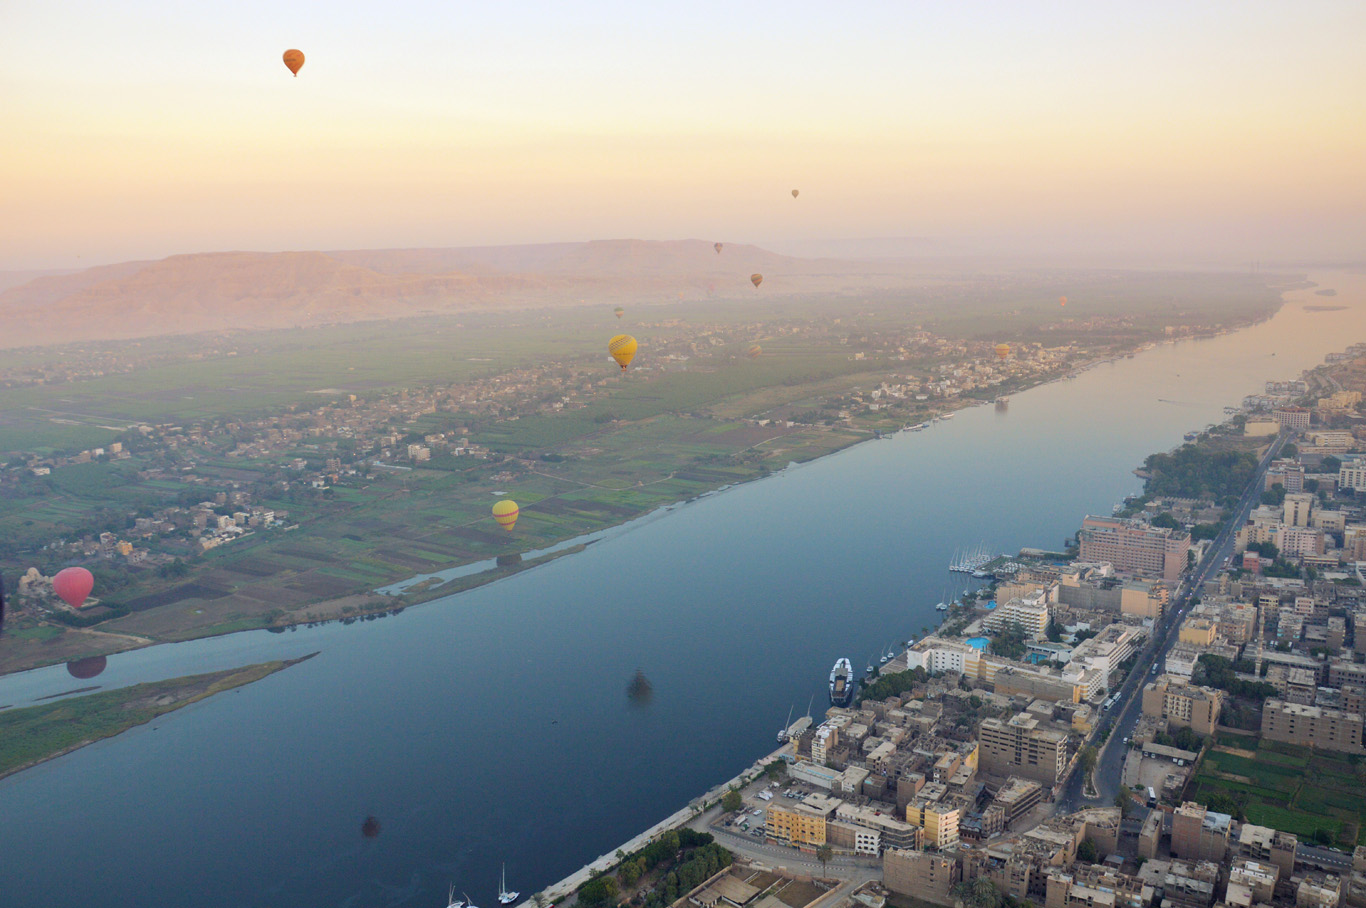   Ballons over Luxor     more info   